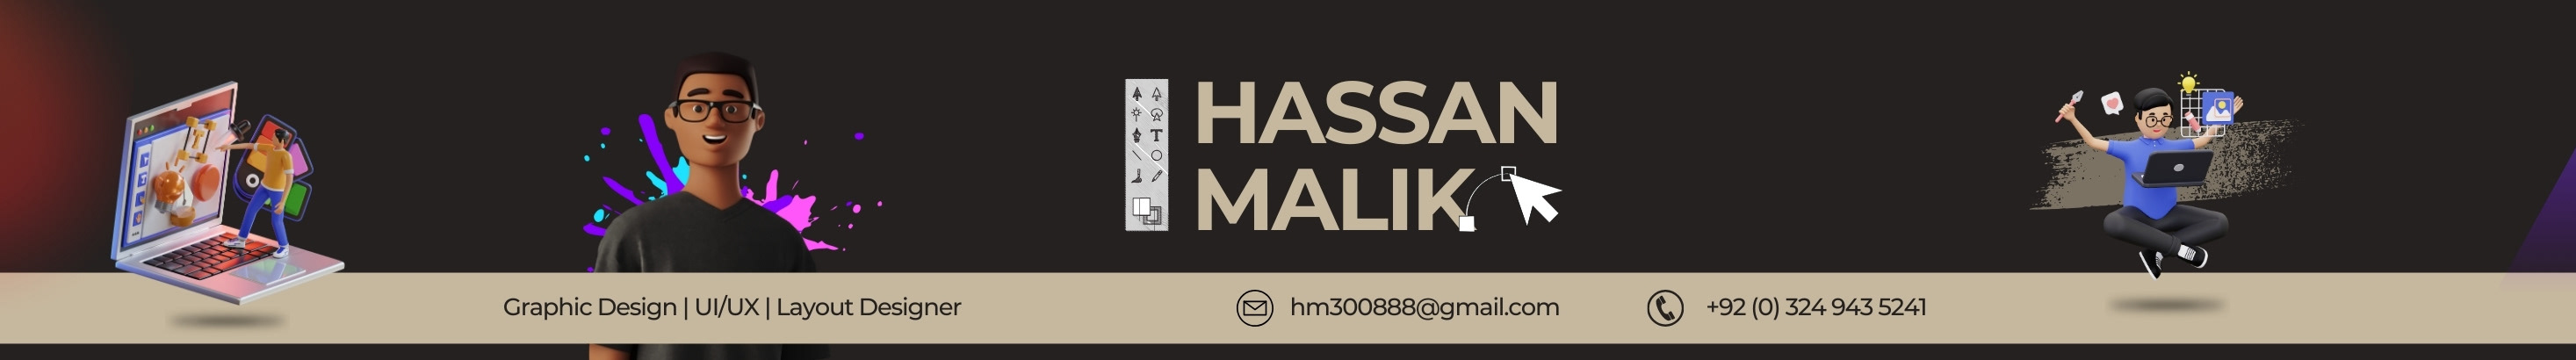 Hassan Malik のプロファイルバナー